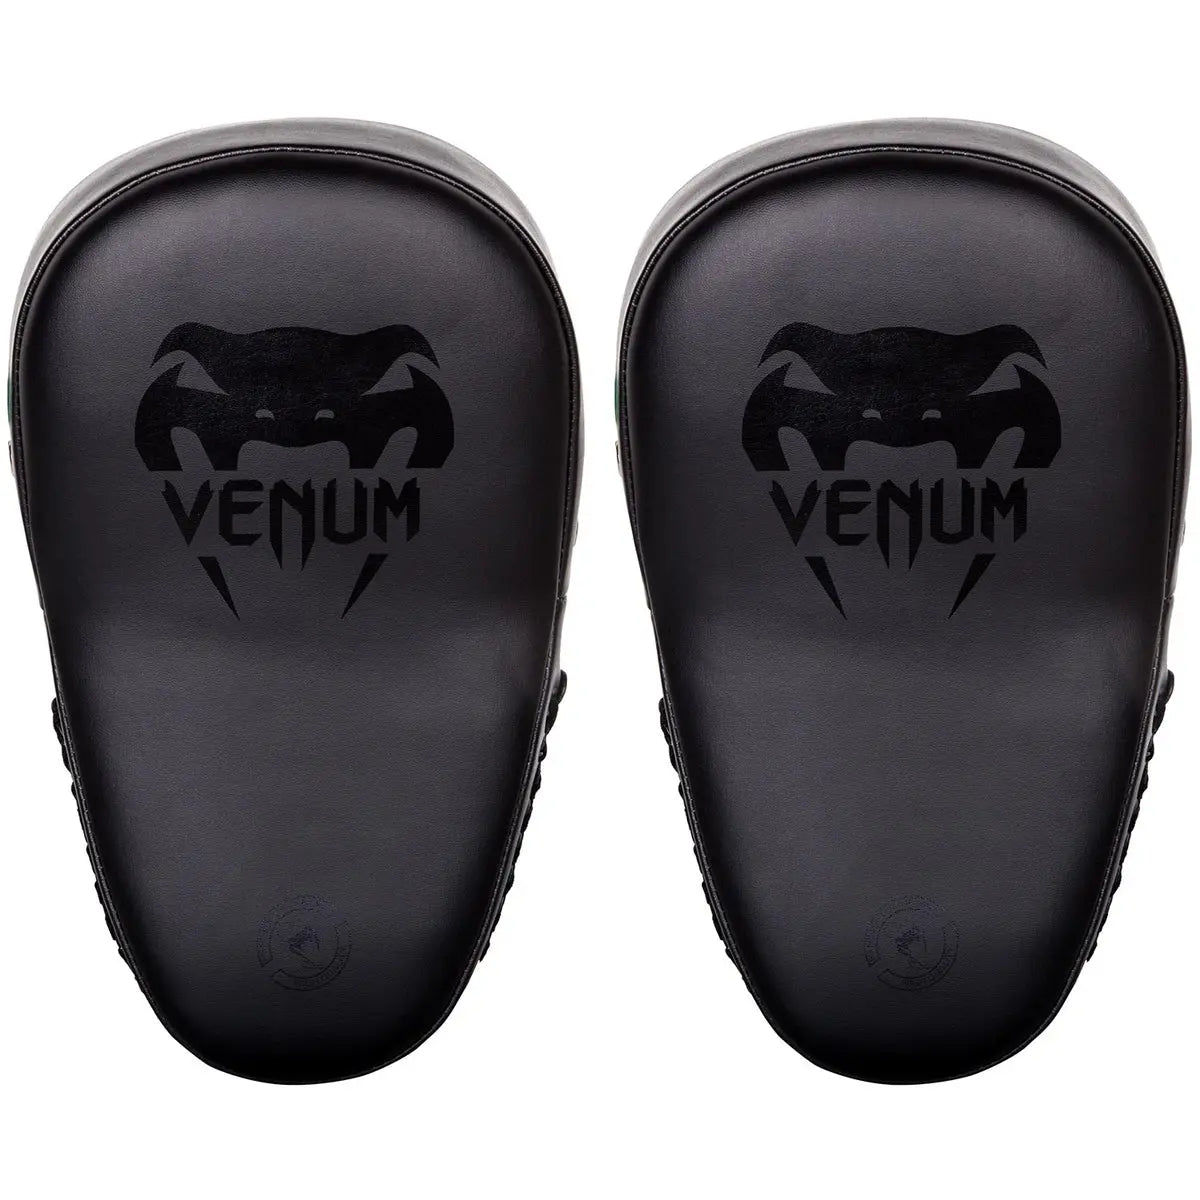 Venum Elite Big MMA Training Focus Punch Mitts Venum